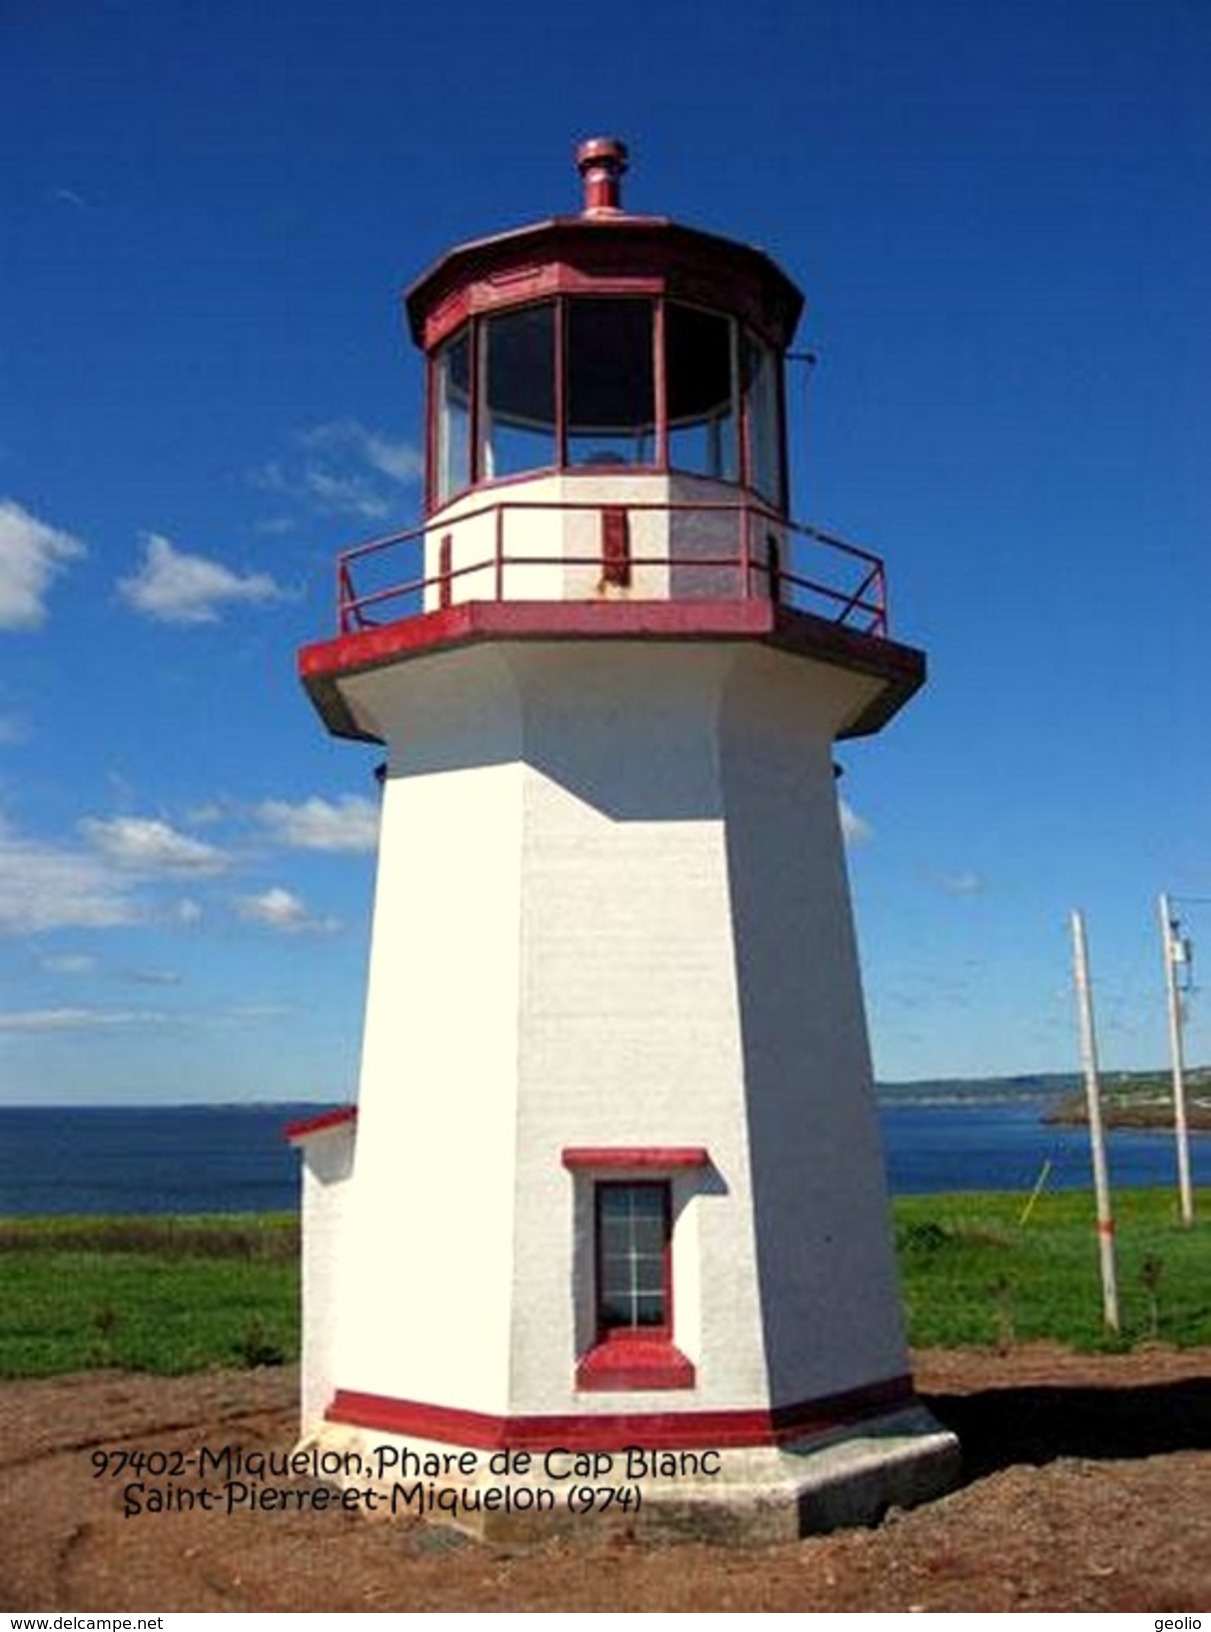 Miquelon (974)-Phare De Cap Blanc (Edition à Tirage Limité) - Saint-Pierre-et-Miquelon